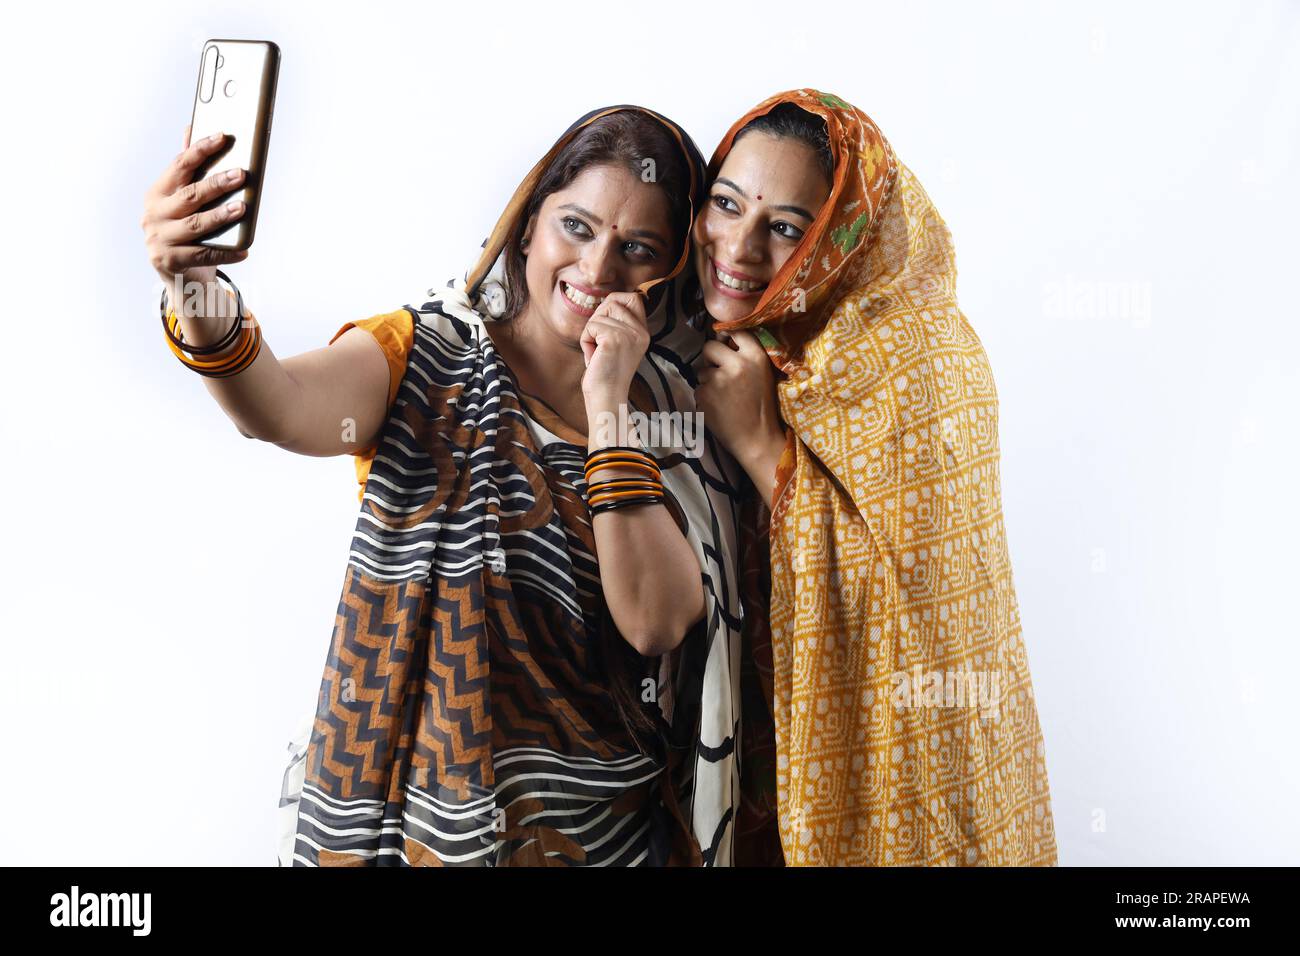 Ländliche indische glückliche Frauen in Saree, die verschiedene Ausdrucksformen des Dorflebens darstellen. Sie halten ein Handy und machen ein Selfie Stockfoto